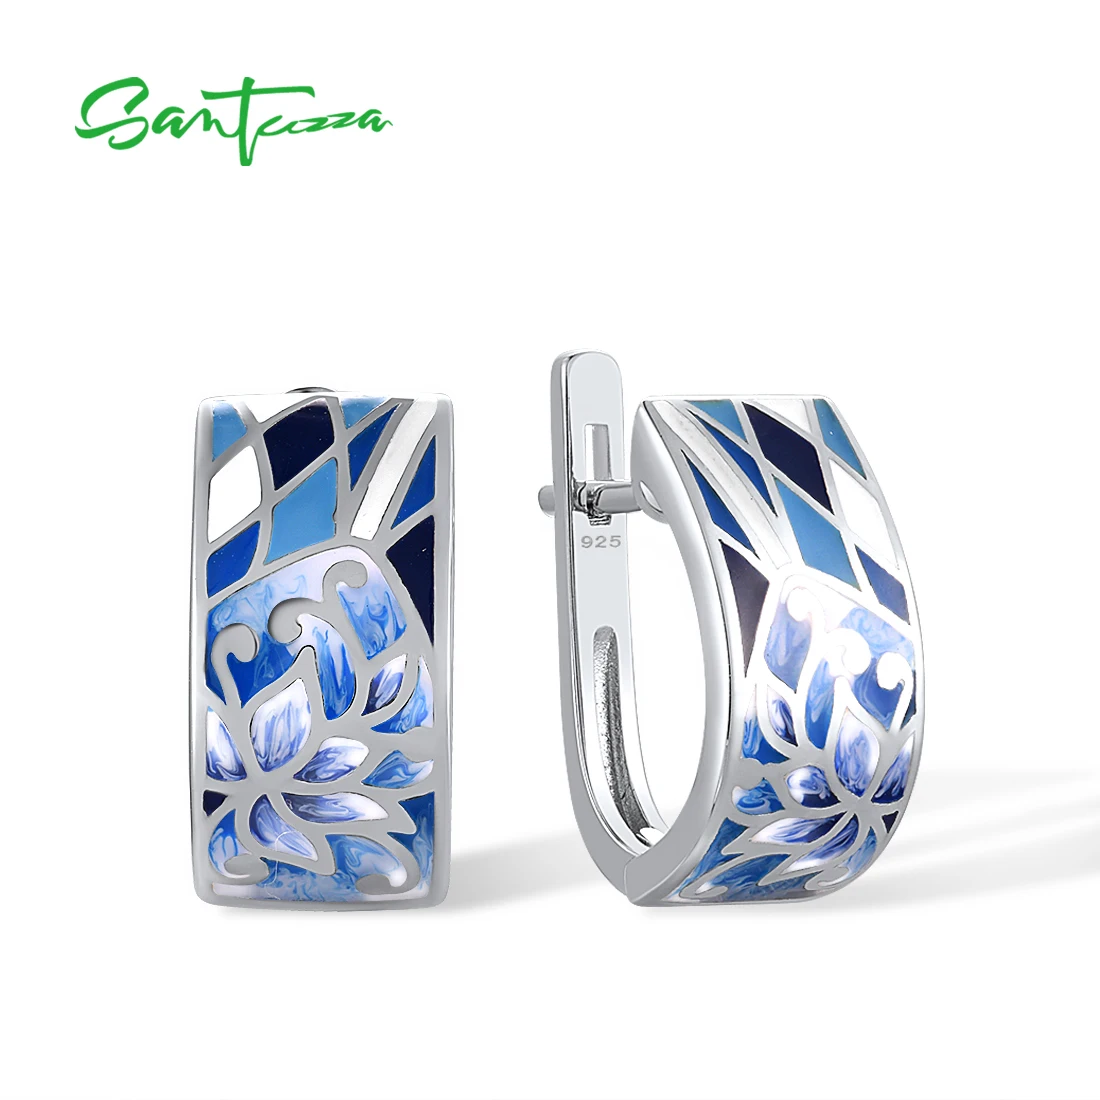 

SANTUZZA Genuine 925 Sterling Silver Earrings For Women Blue Flower Enamel Earrings Oriental Trendy Chic Fine Jewelry Handmade